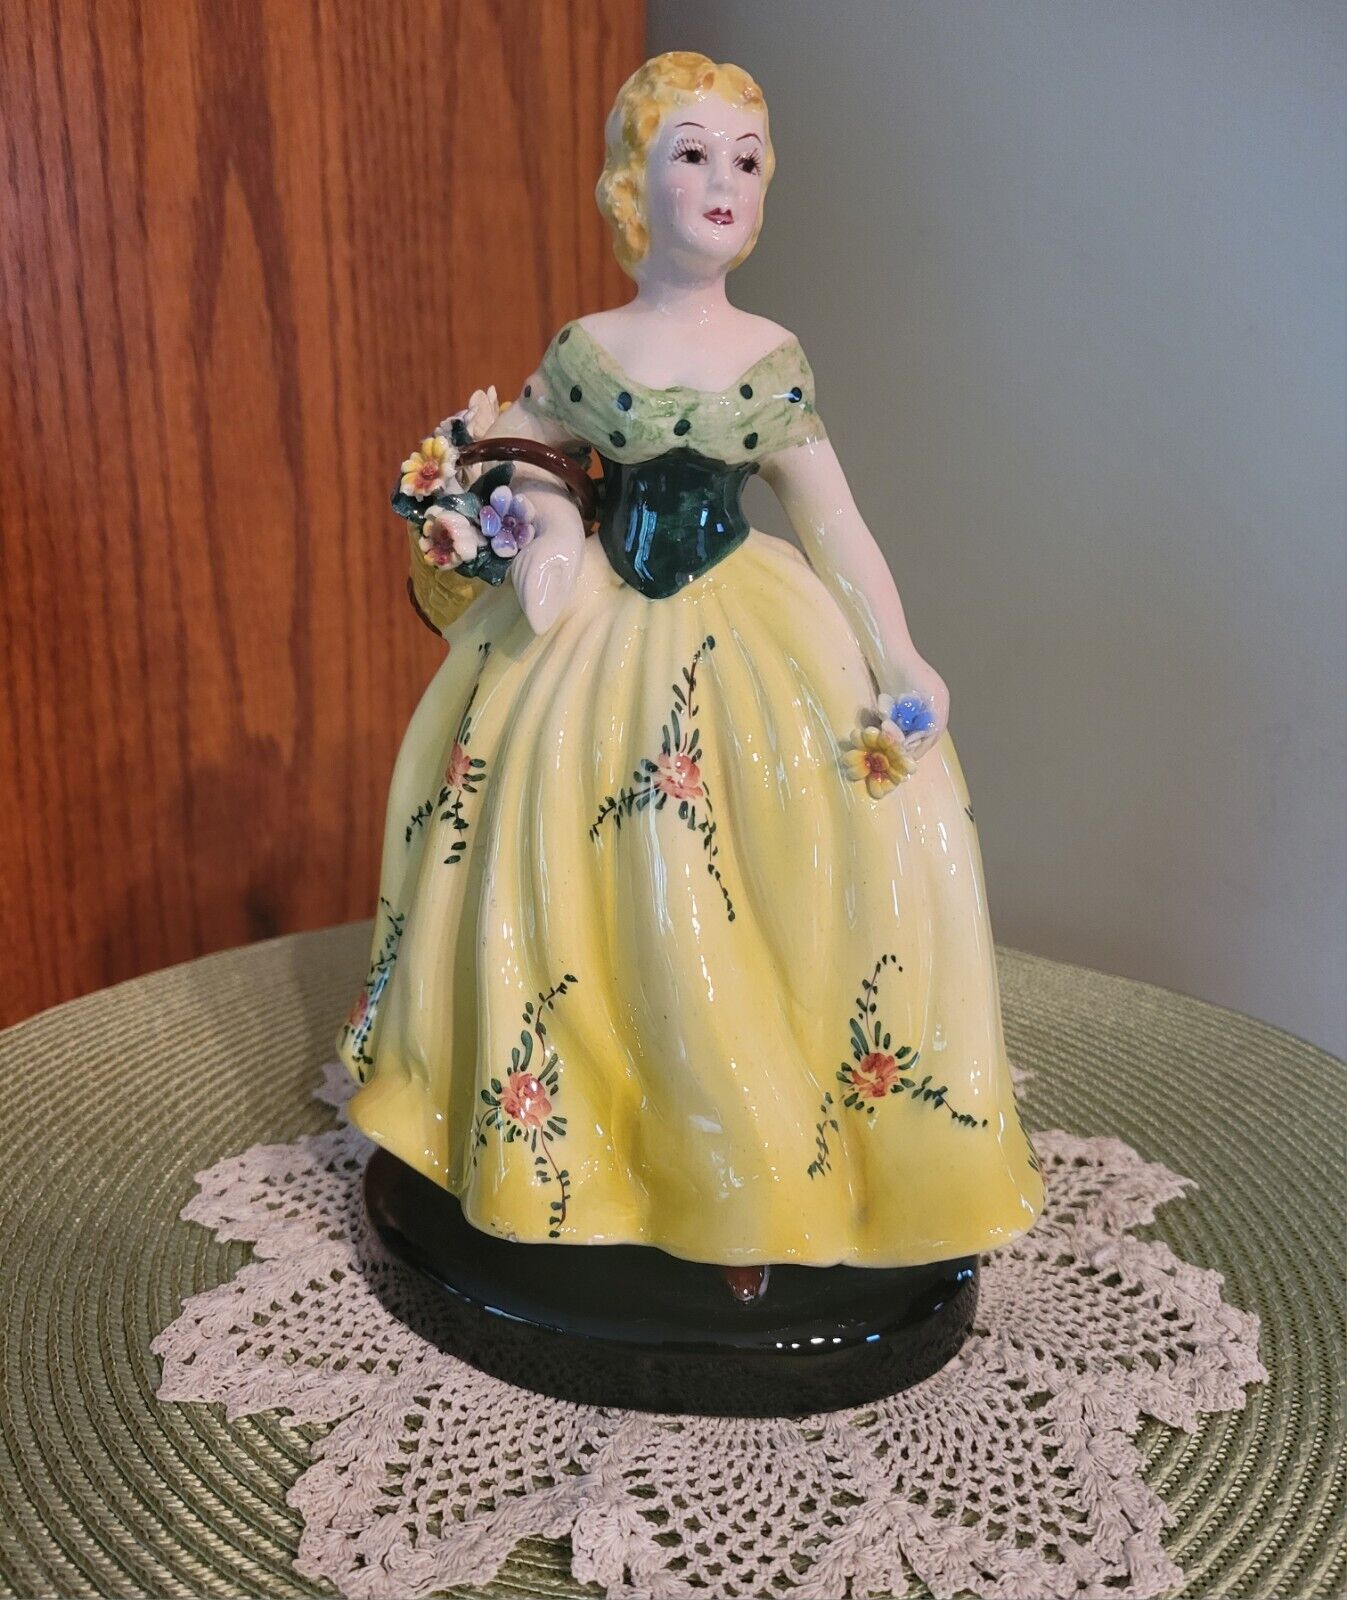 Italian Porcelain Vintage Ceramic Figurine with Floral Dress & Basket